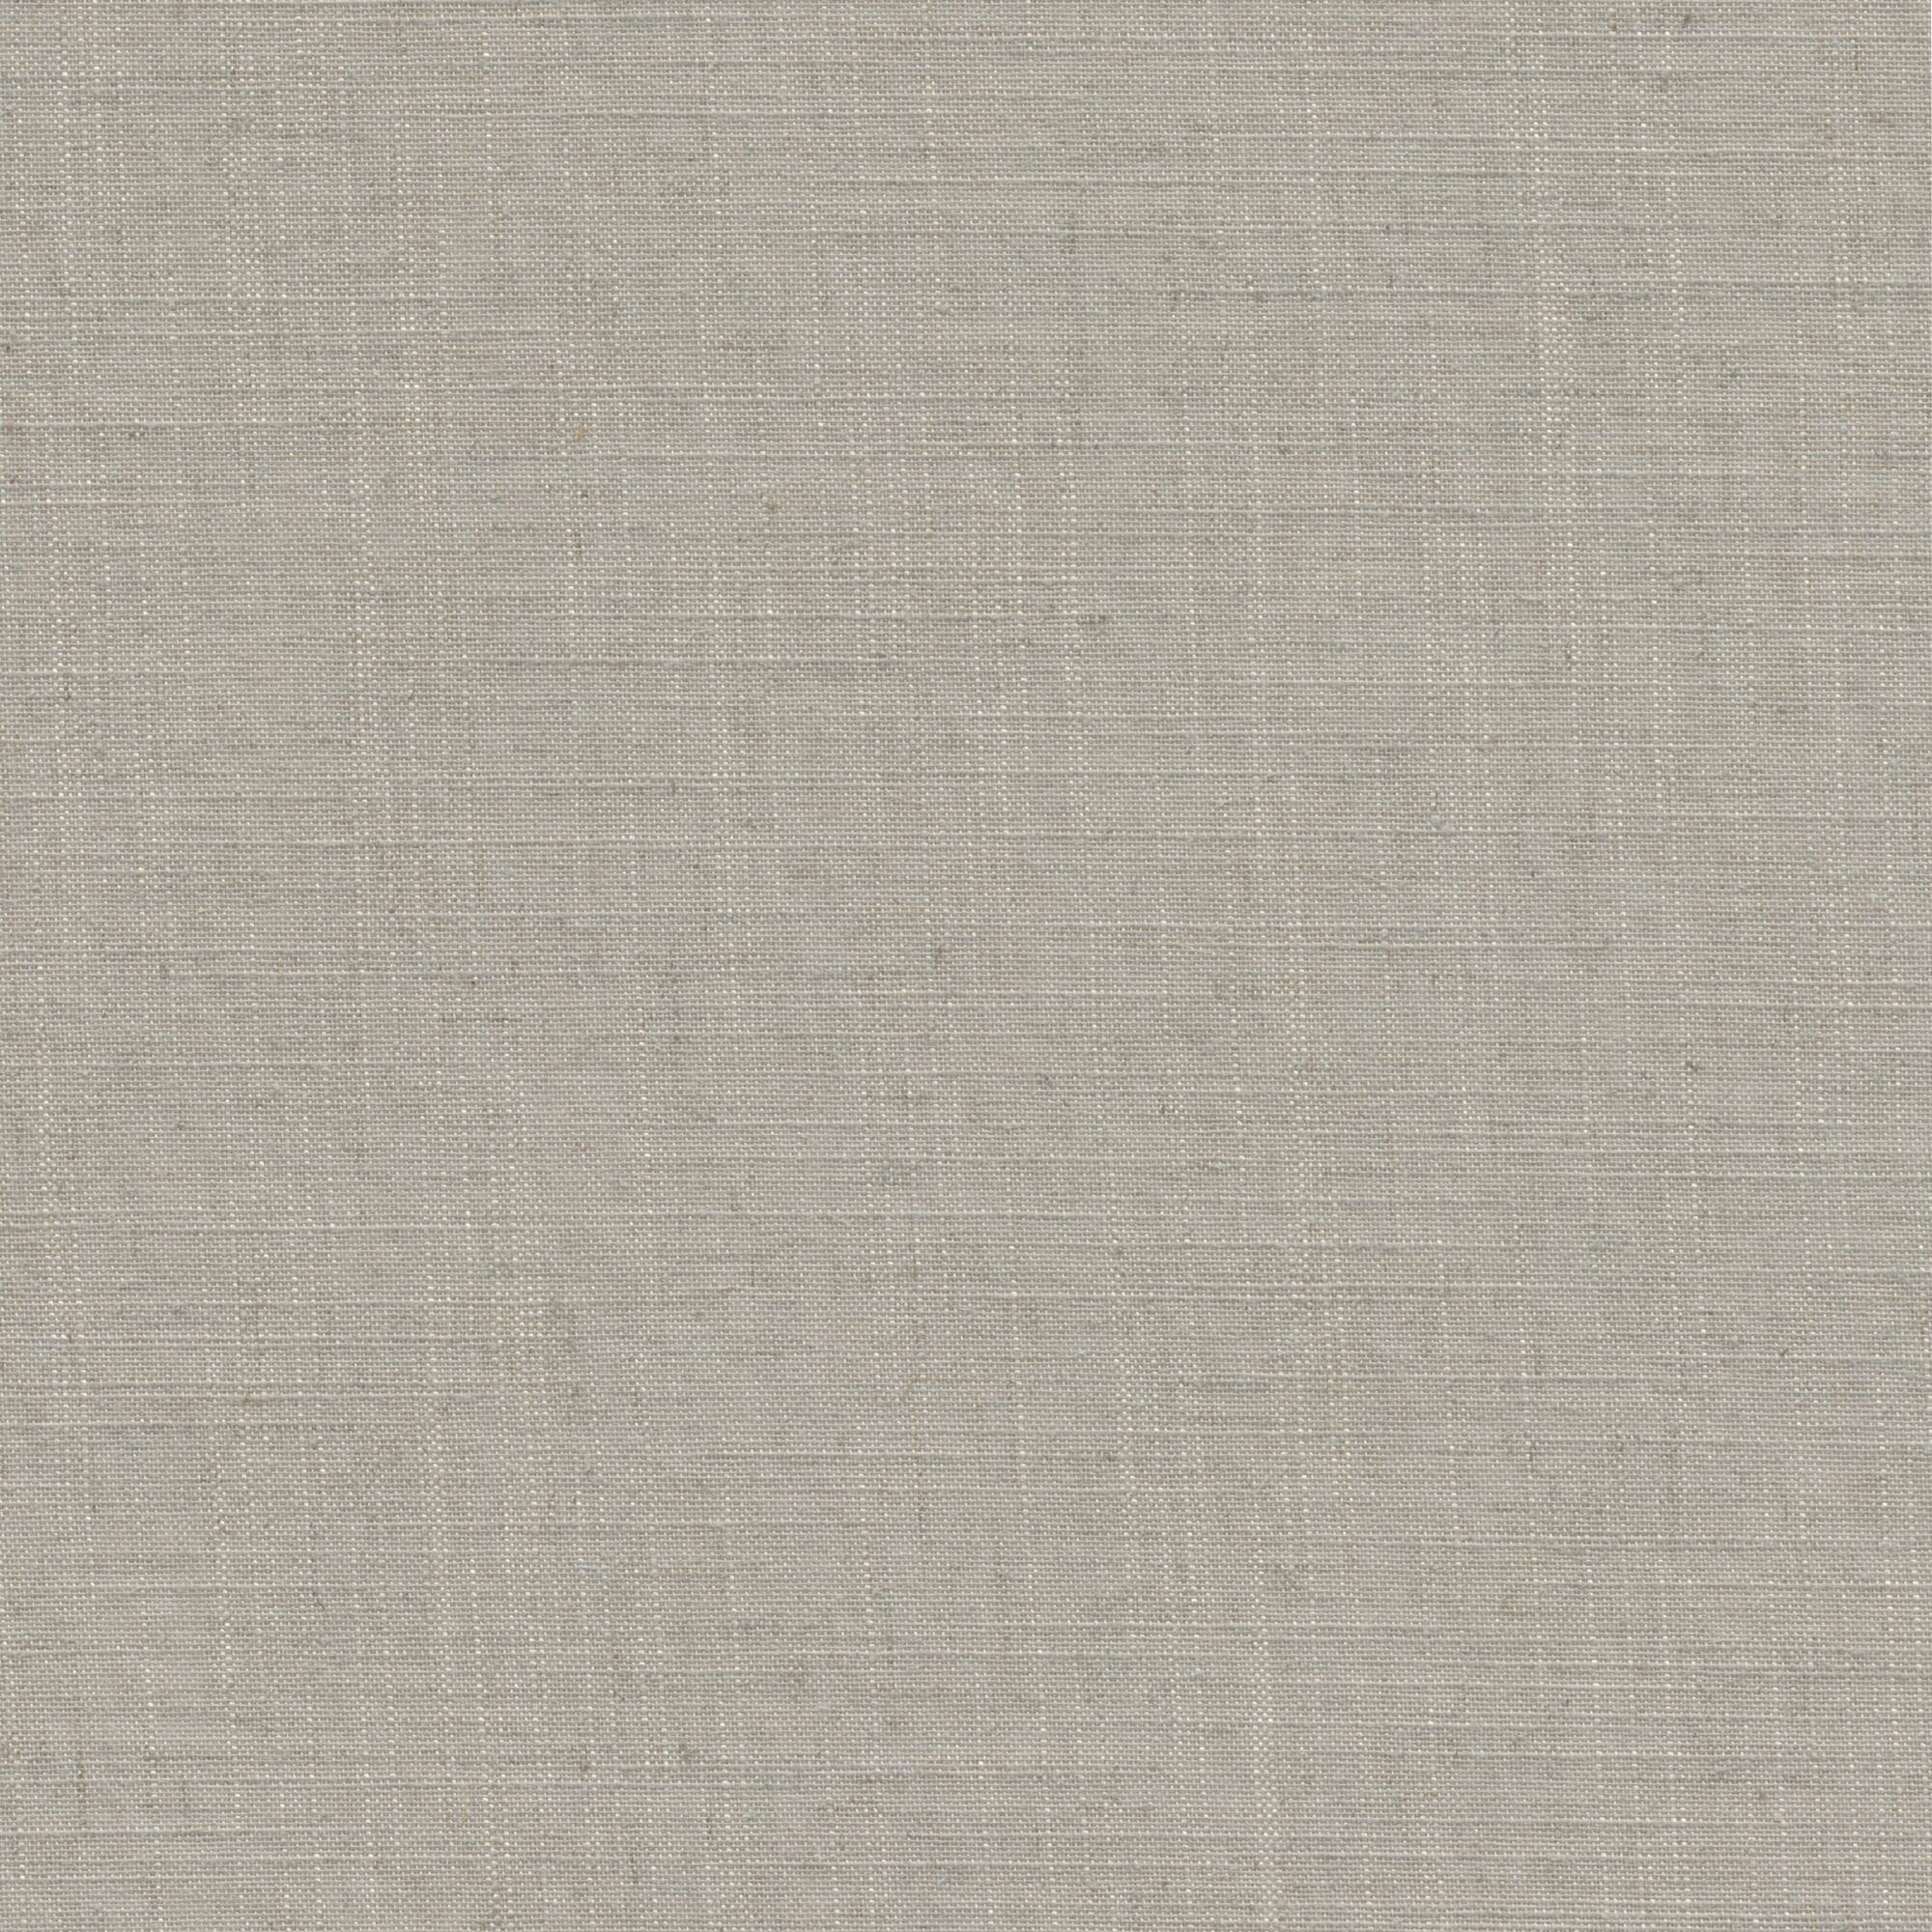 Tessuto per tende a rullo filtrante INSPIRE Brisbane beige 52 x 190 cm - 5